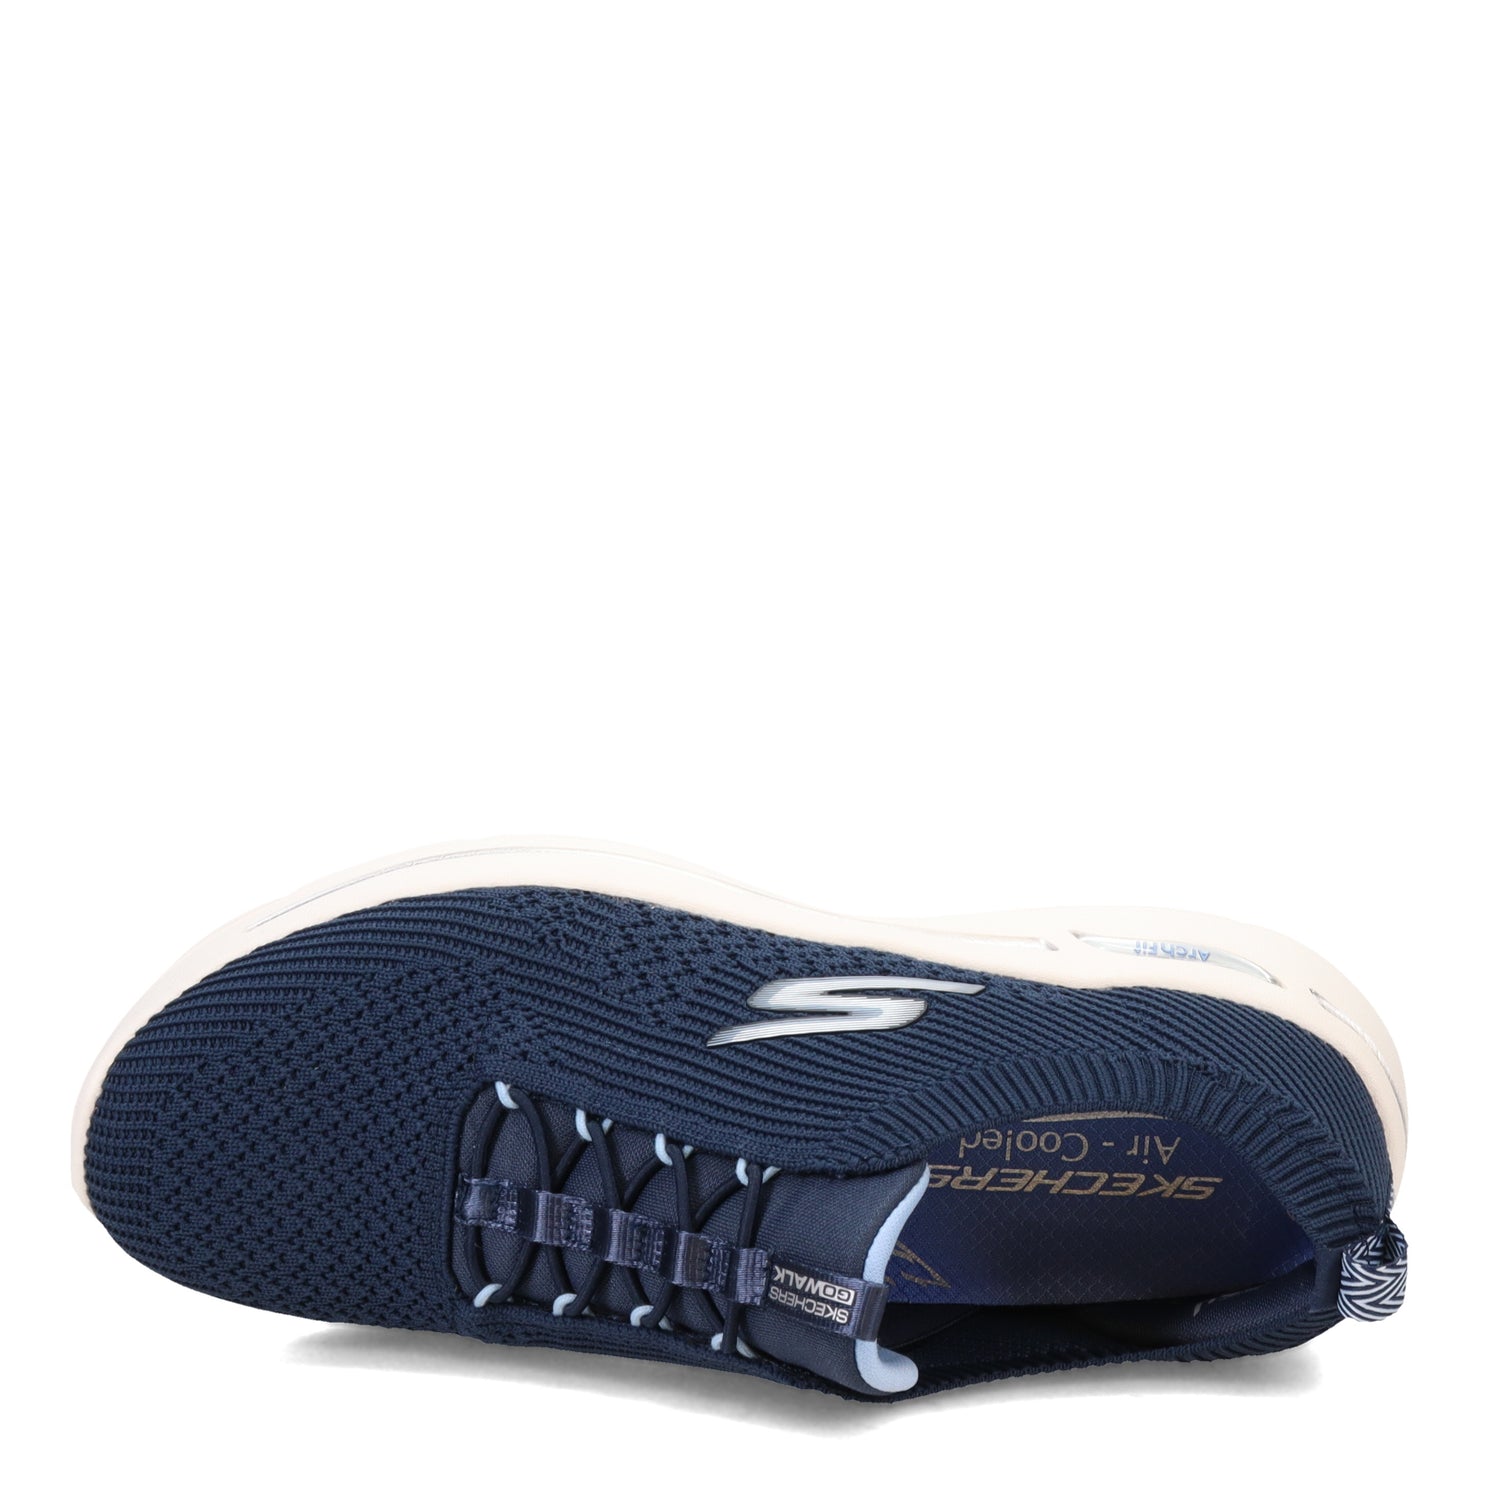 Peltz Shoes  Women's Skechers GO WALK Arch Fit - Crystal Waves Sneaker Navy Blue 124882-NVLB